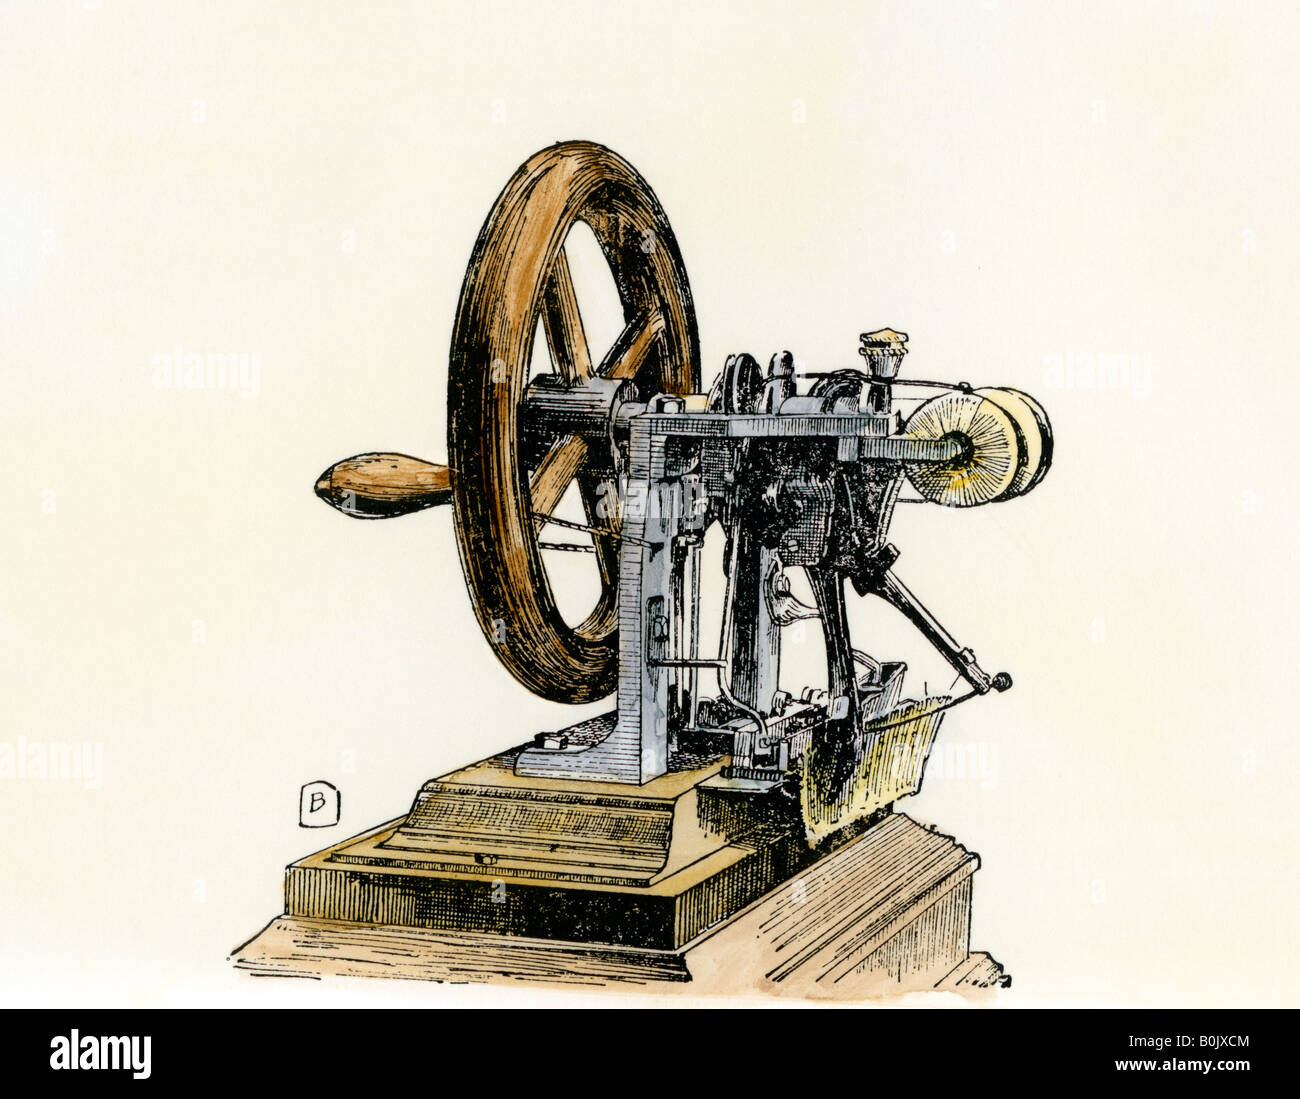 Проект первые помогут. Элиас Хоу швейная машинка. Эмос Хоу швейная машинка. Швейная машина Элиаса Хоу, 1845 год..